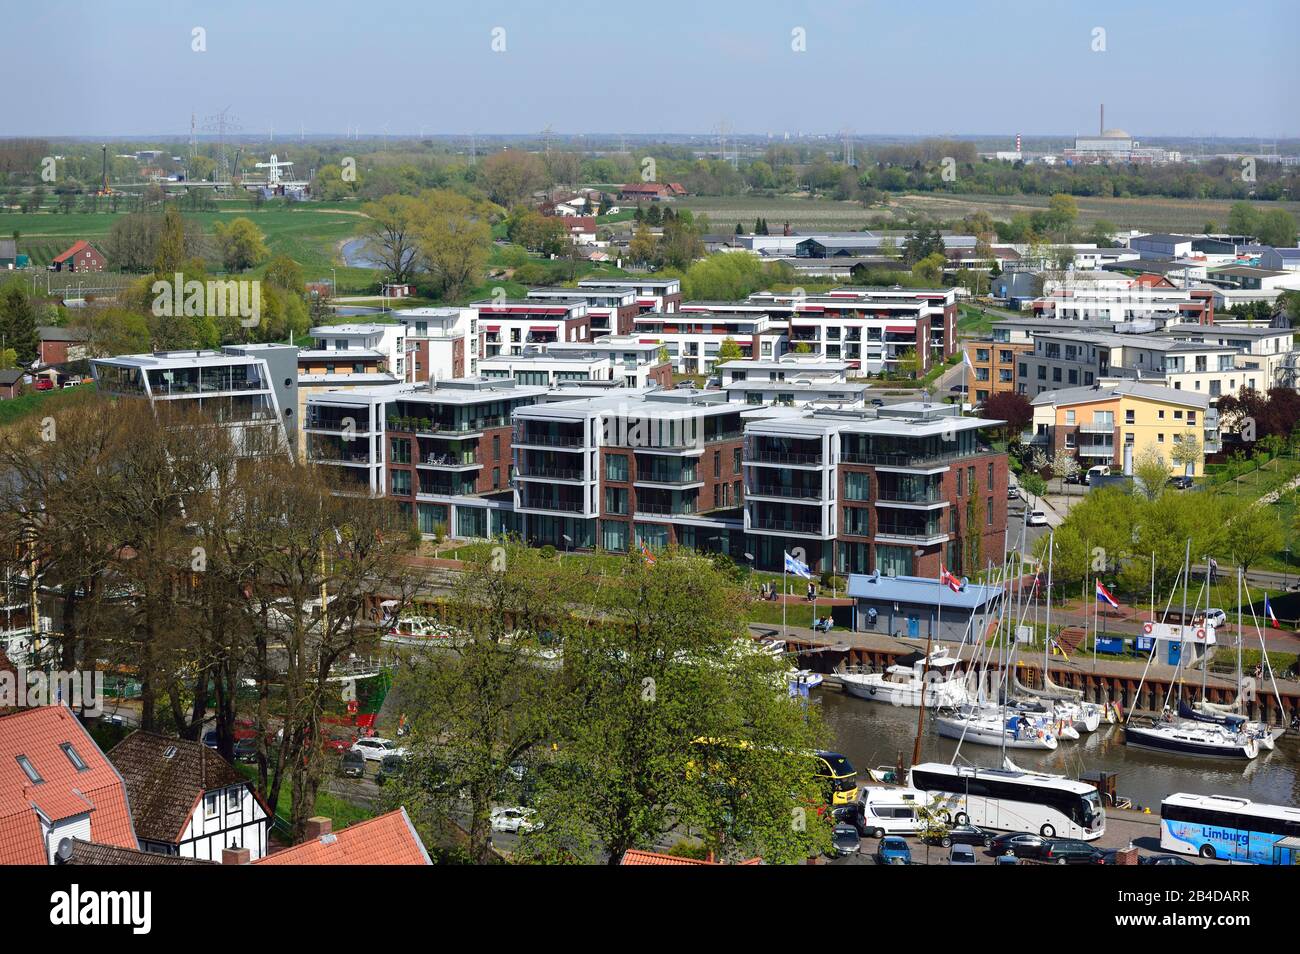 L'Europe, l'Allemagne, la Basse-Saxe, Stade, la région métropolitaine de Hambourg, la ville hanséatique, Alststadt, vue depuis le port de la ville et les bâtiments résidentiels modernes sur l'eau, Banque D'Images